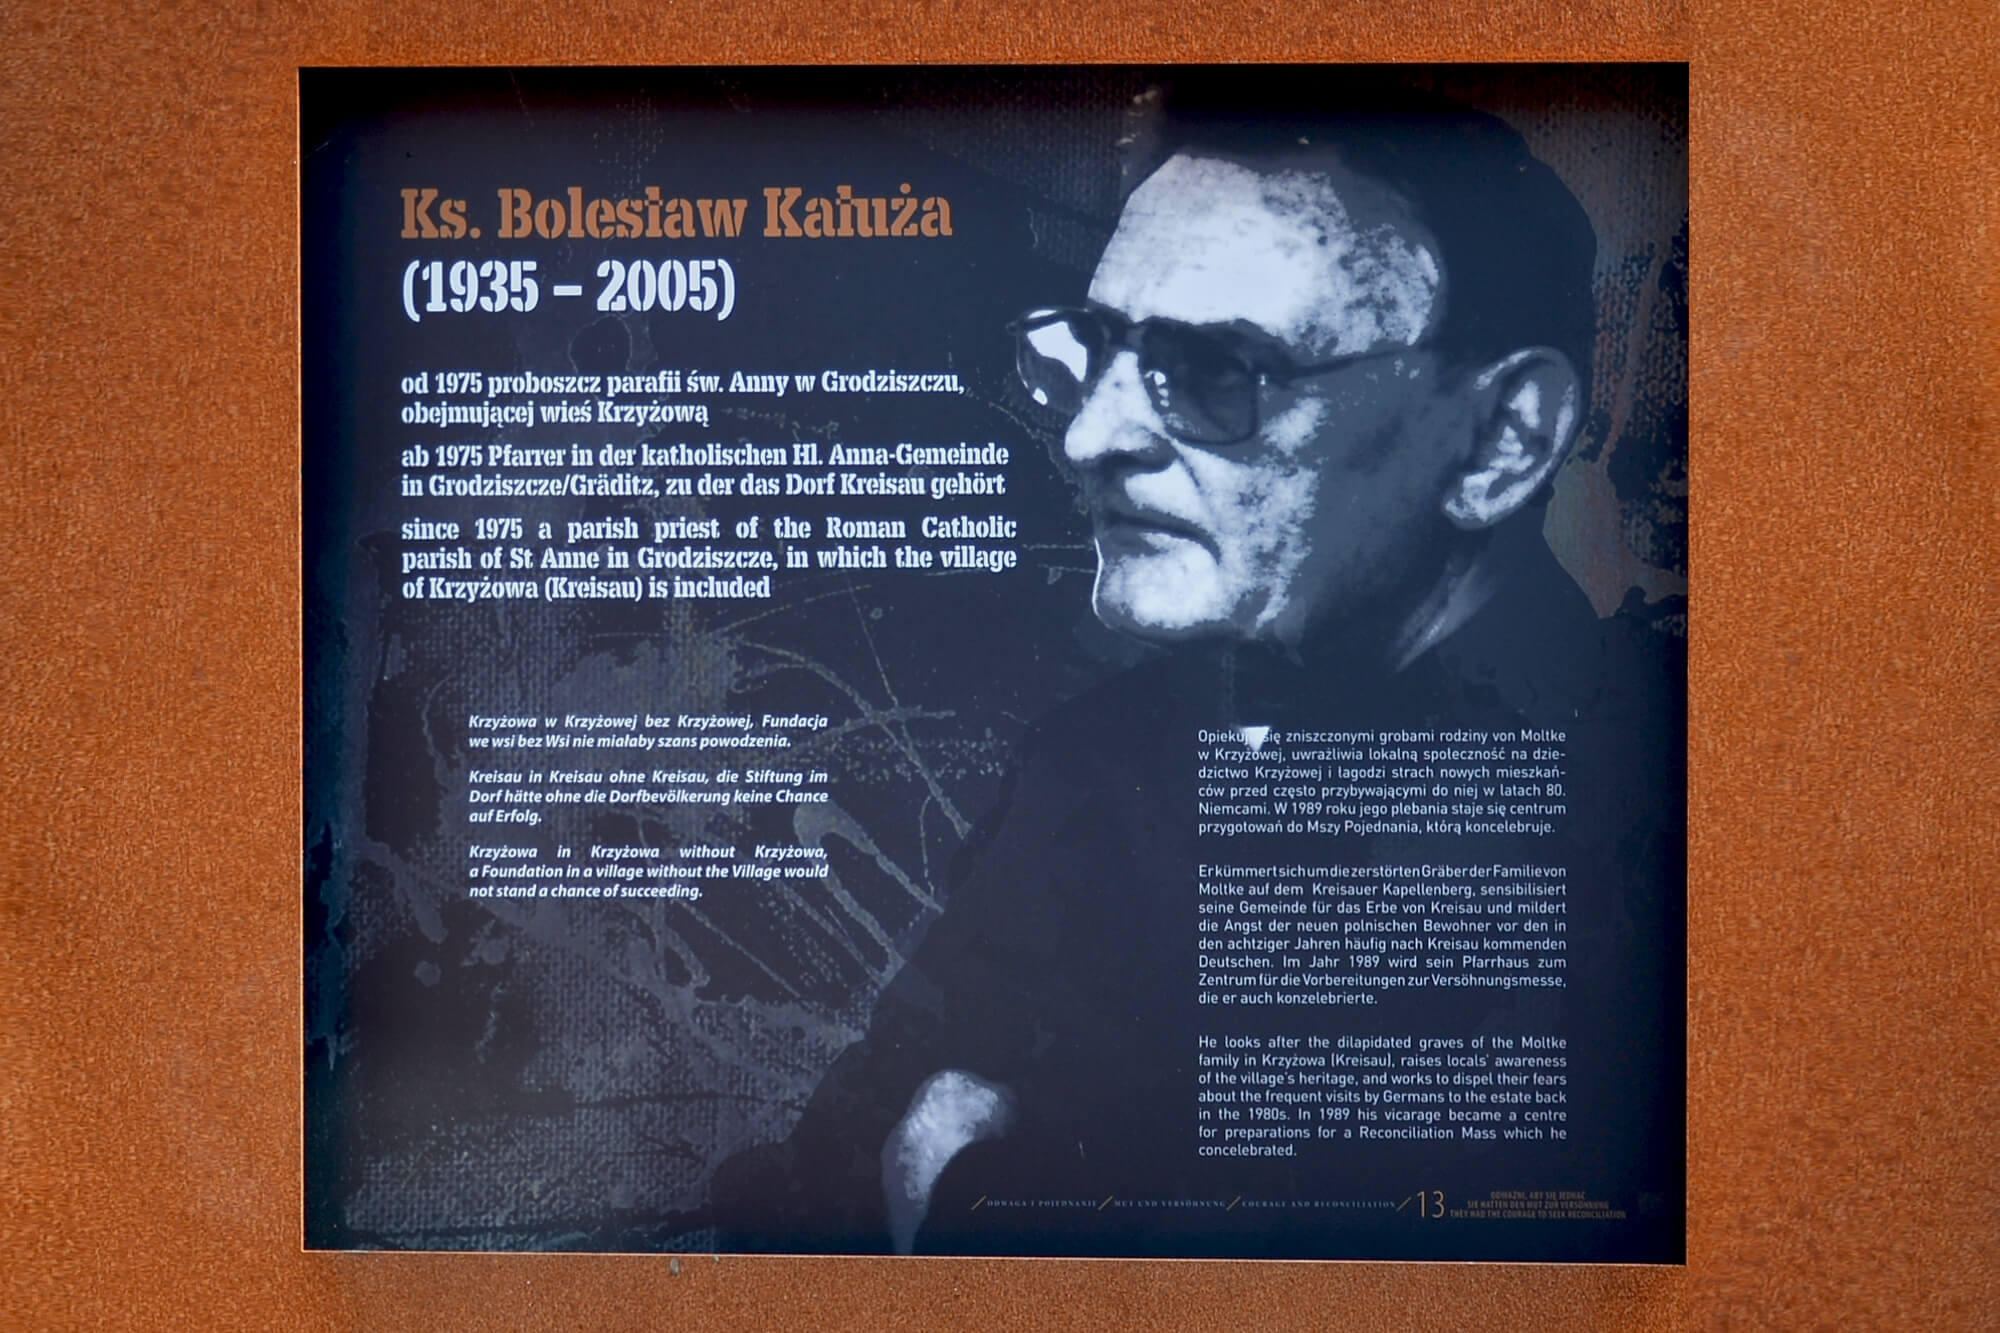 Father Bolesław Kałuża